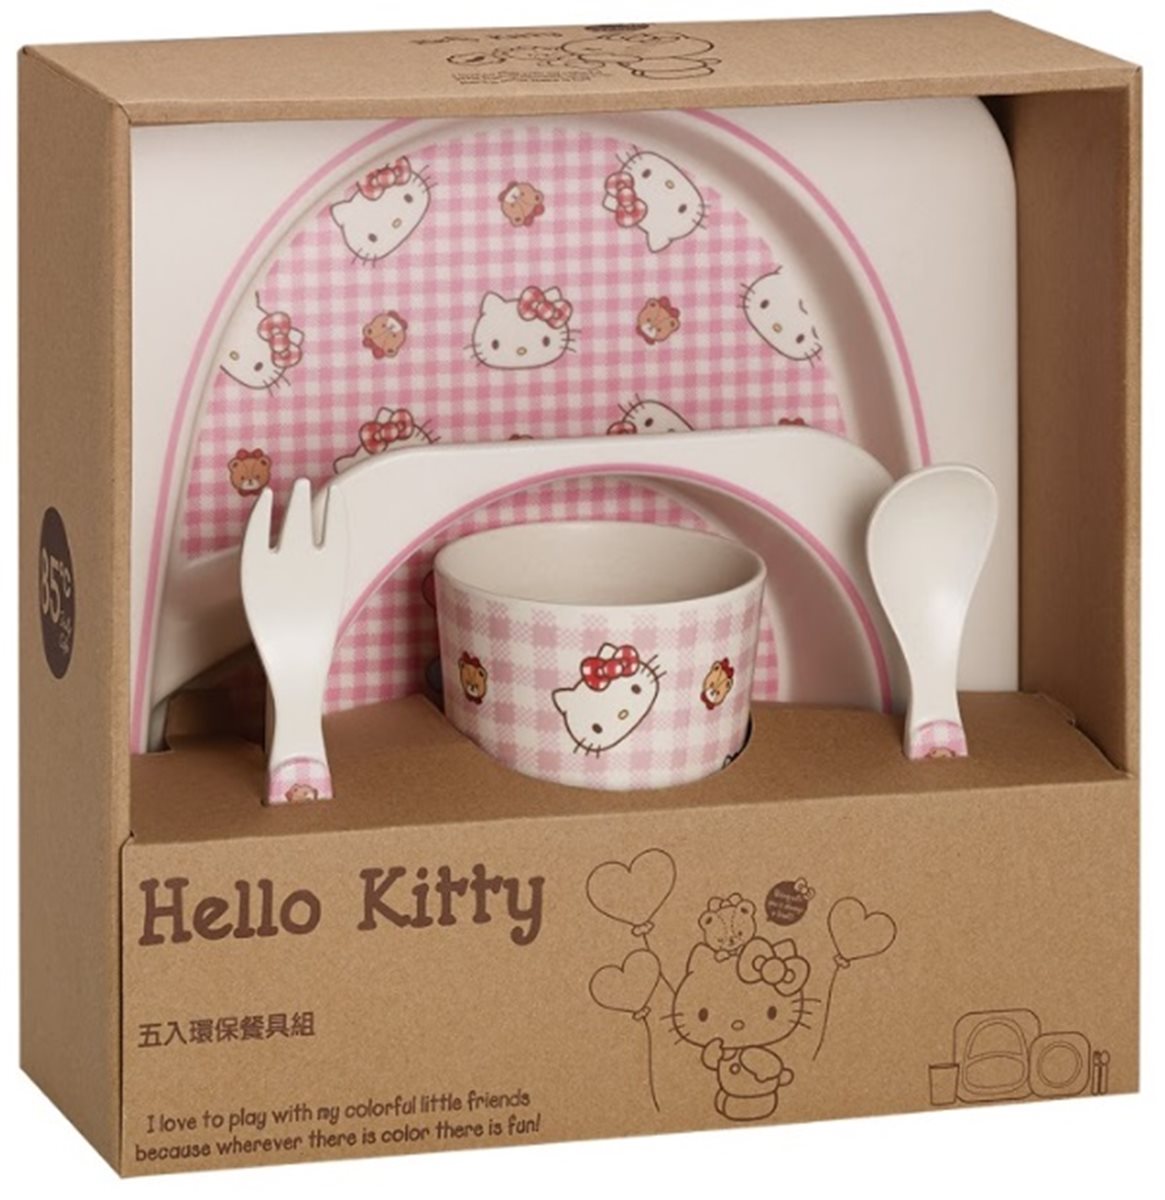 貓迷快衝！「HELLO KITTY蛋糕」8/23開賣  還可加購3色造型湯碗、餐具組